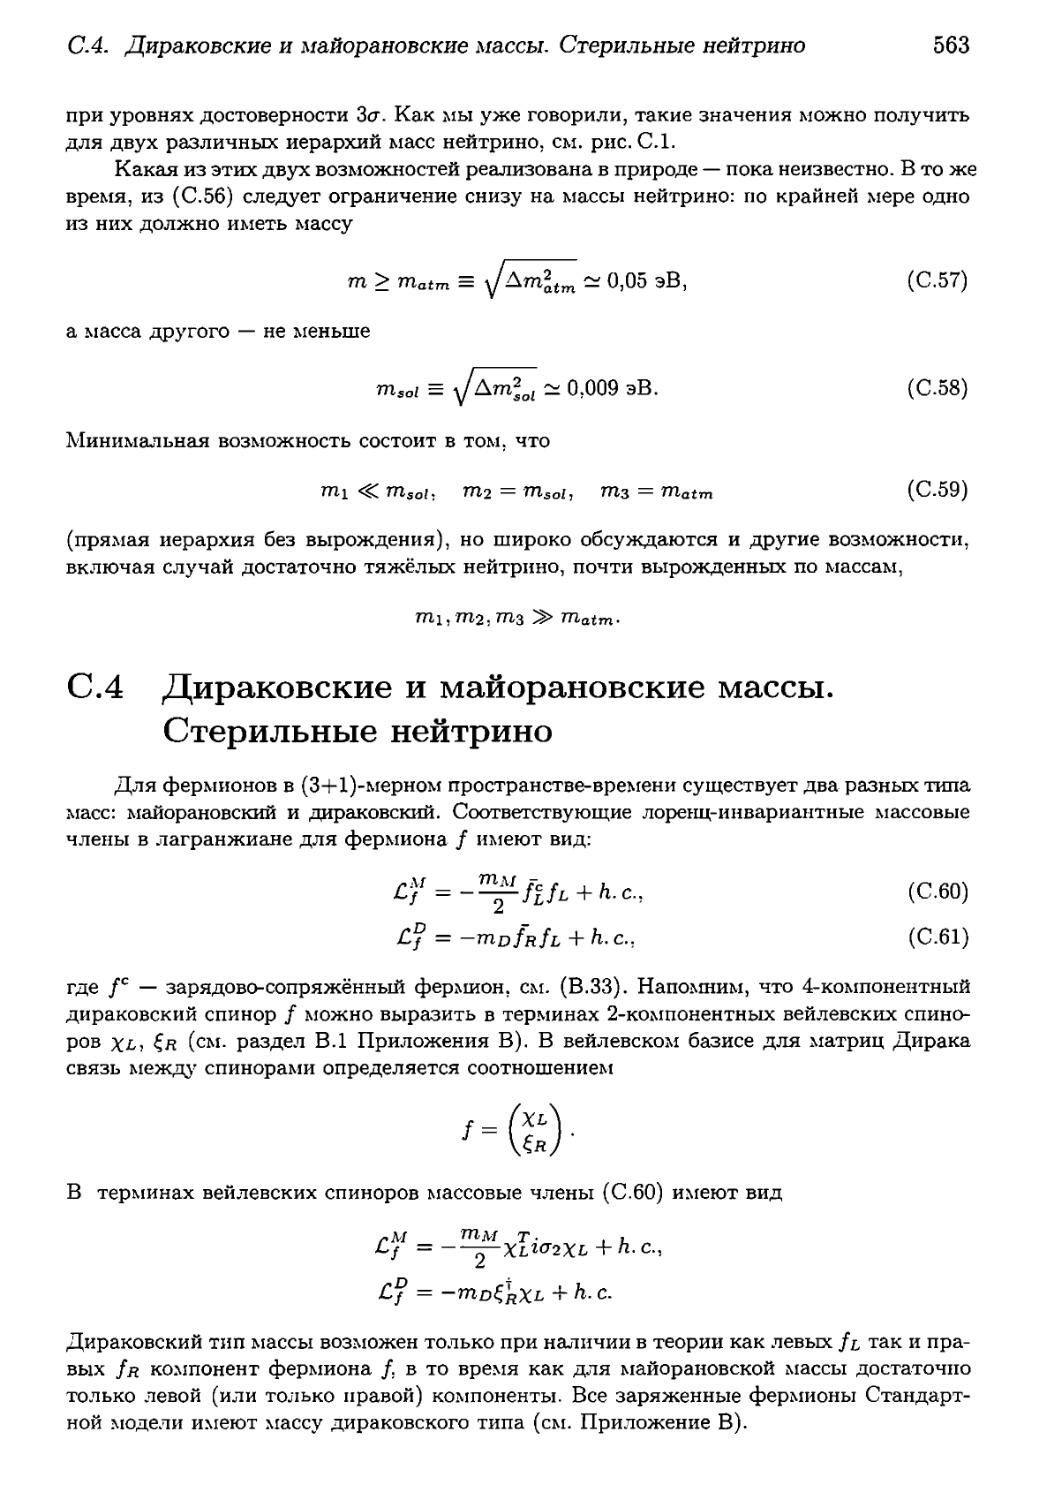 С.4. Дираковские и майорановские массы. Стерильные нейтрино